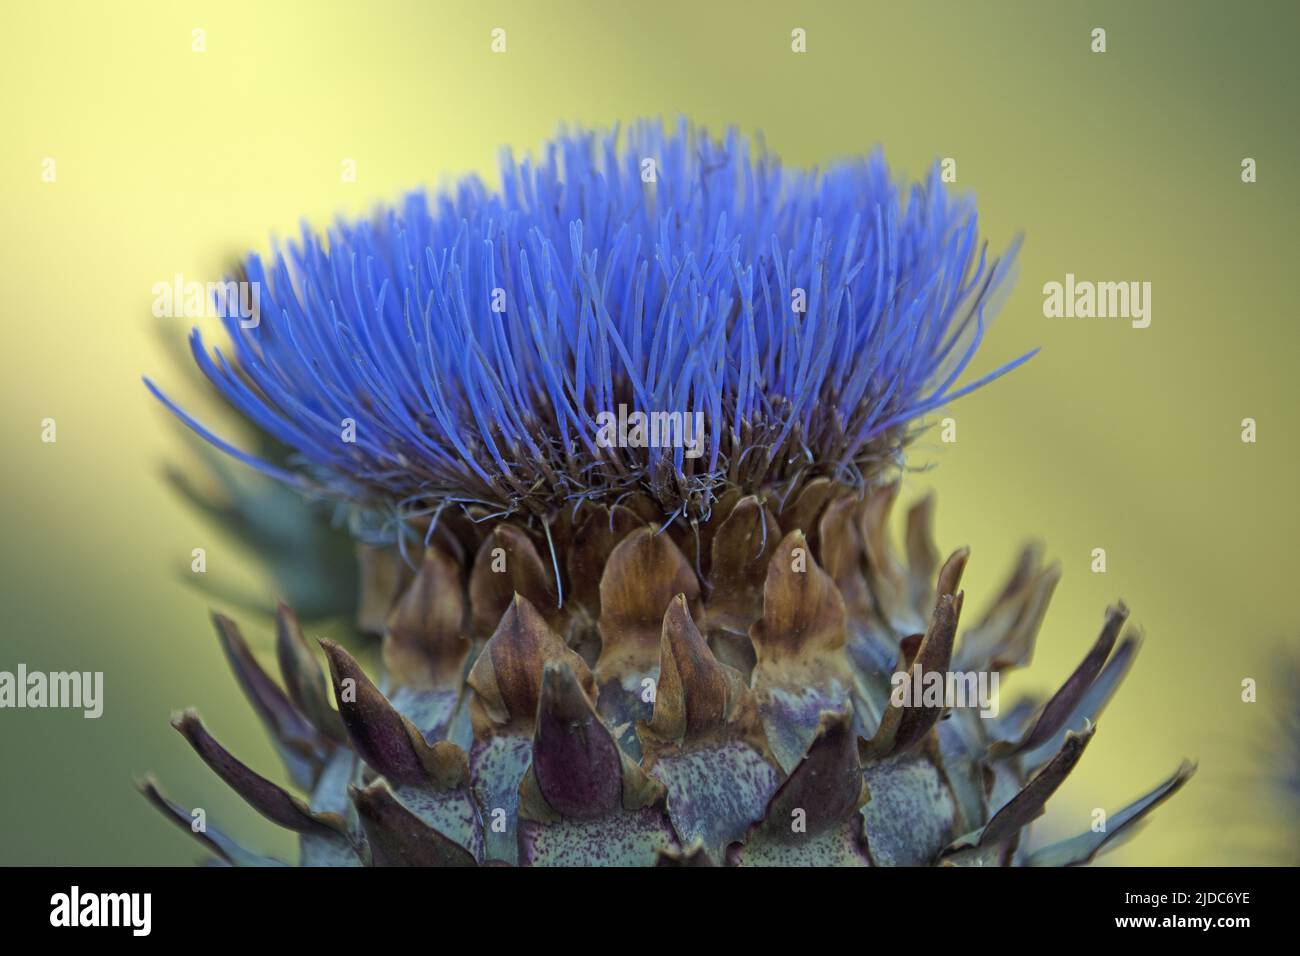 France, La Manche Artichoke in bloom, close-up Stock Photo